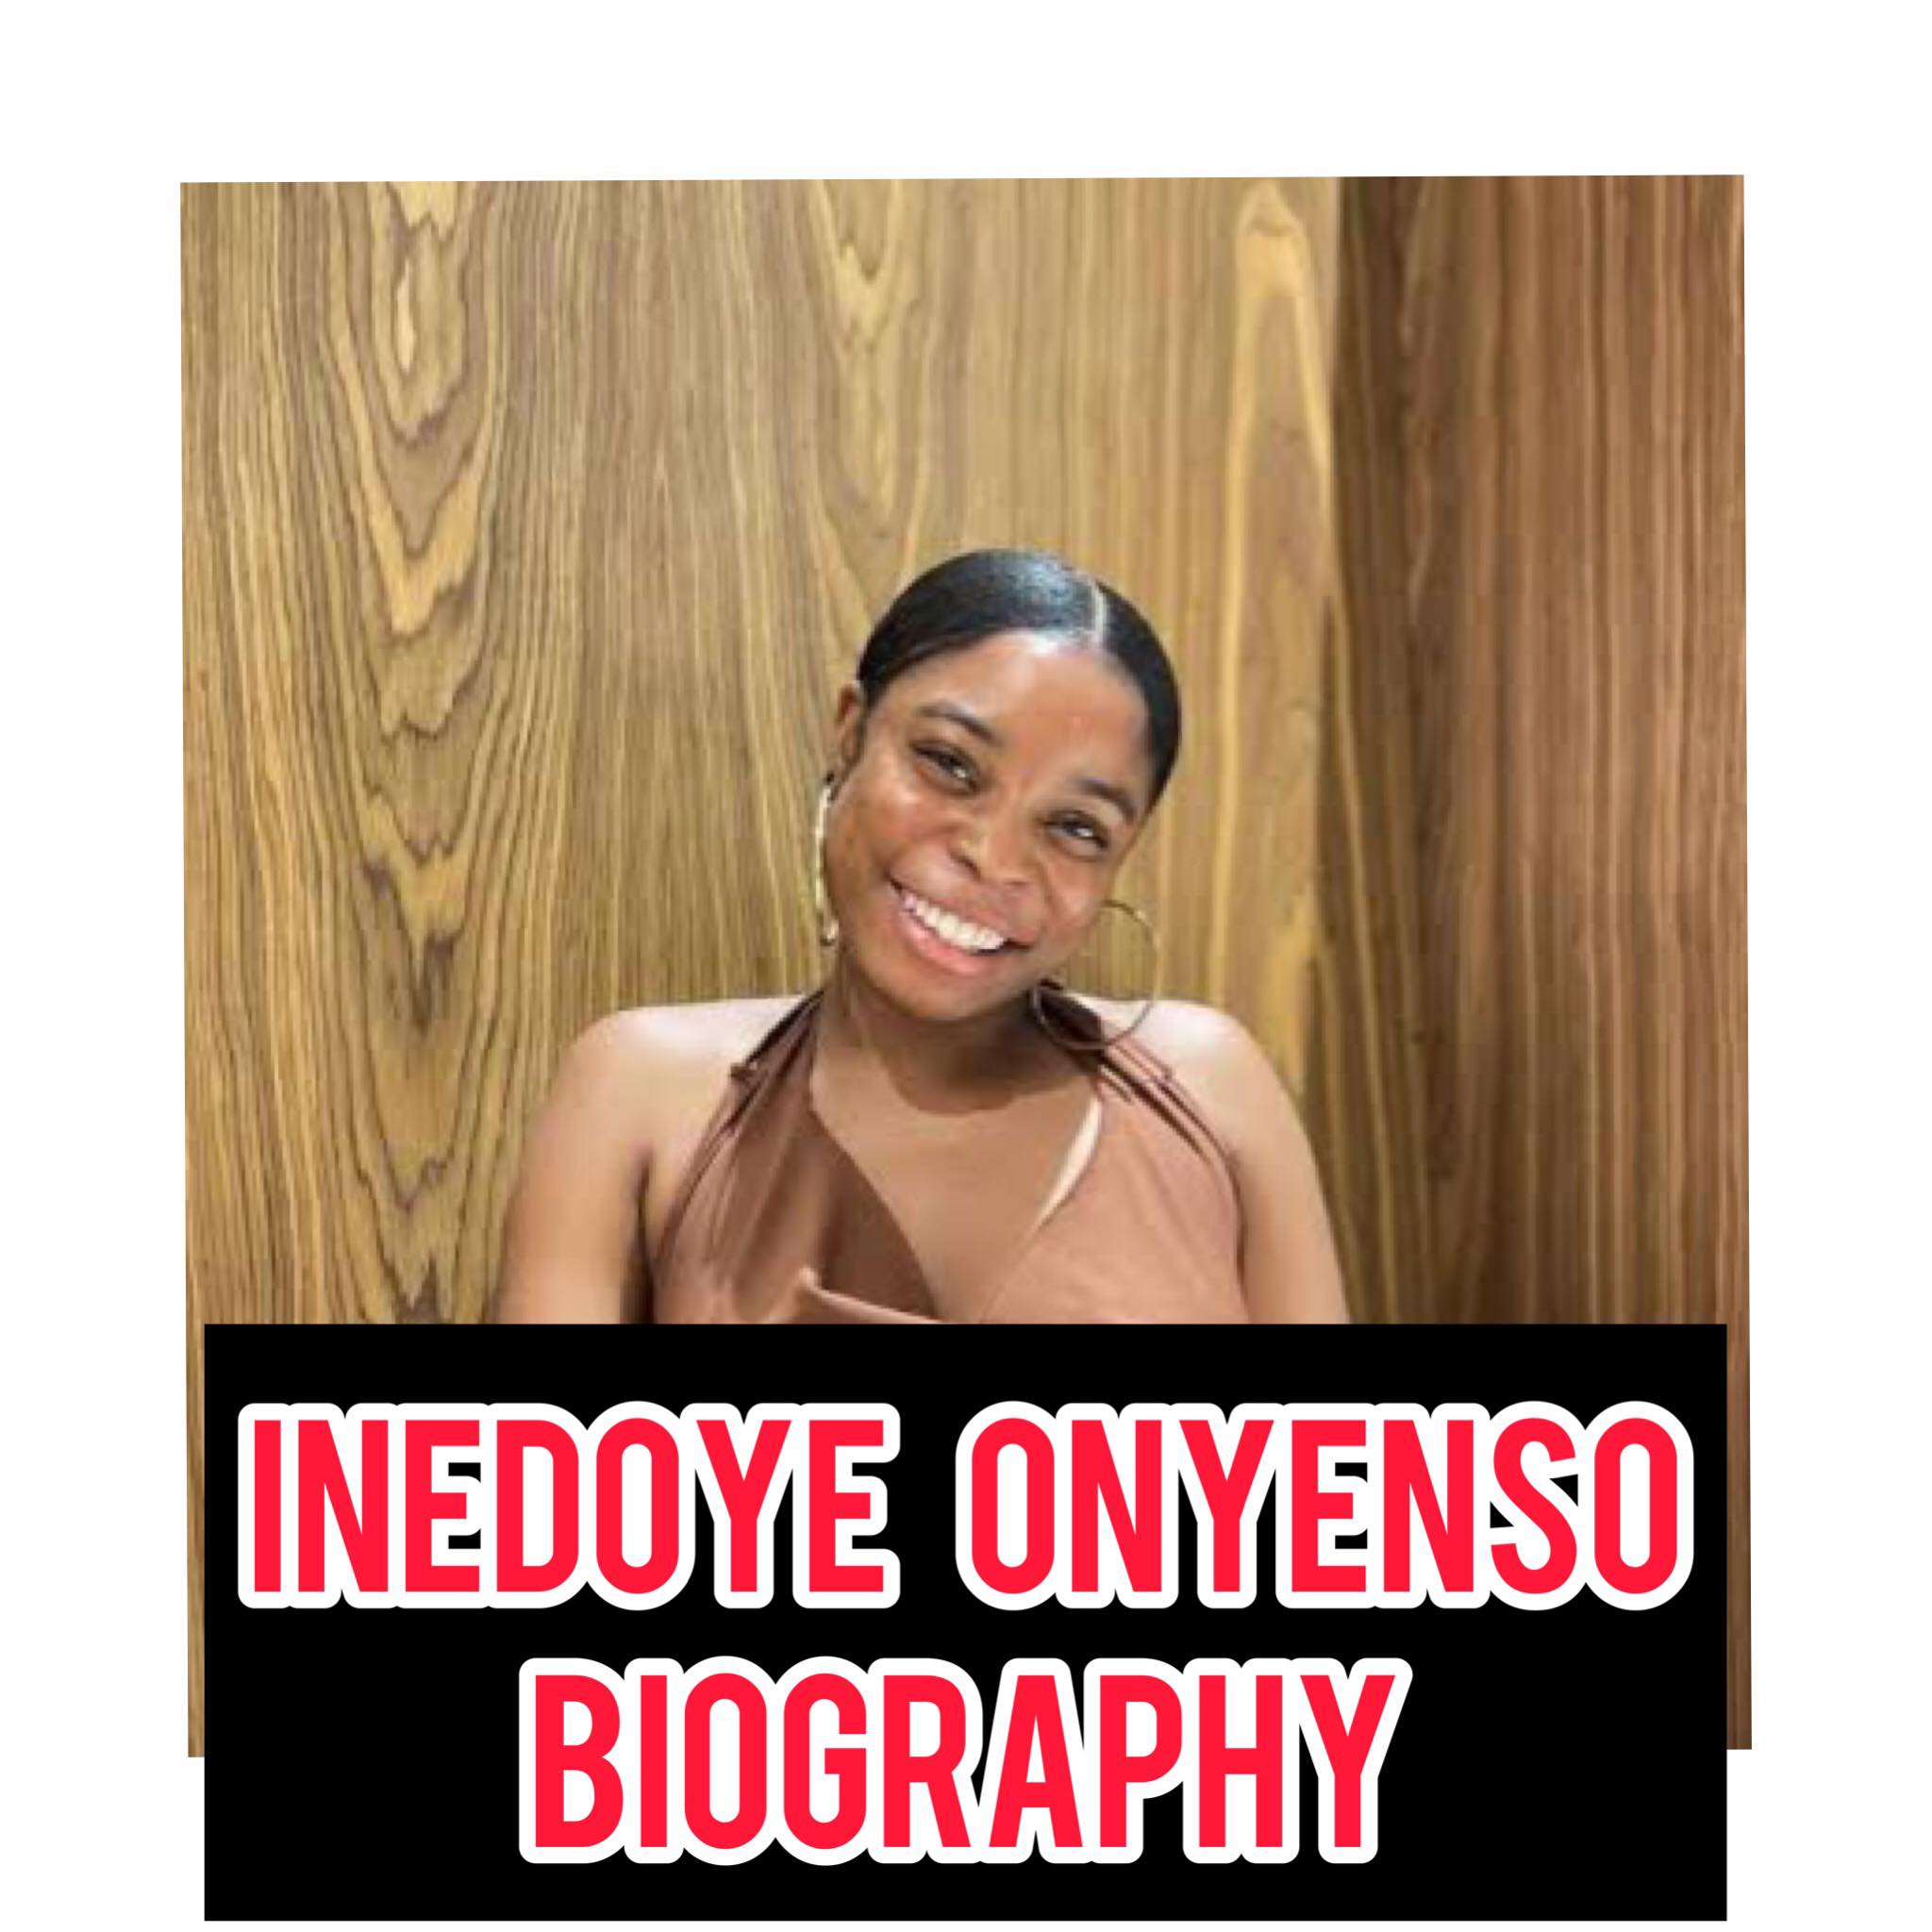 Inedoye Onyenso Biography